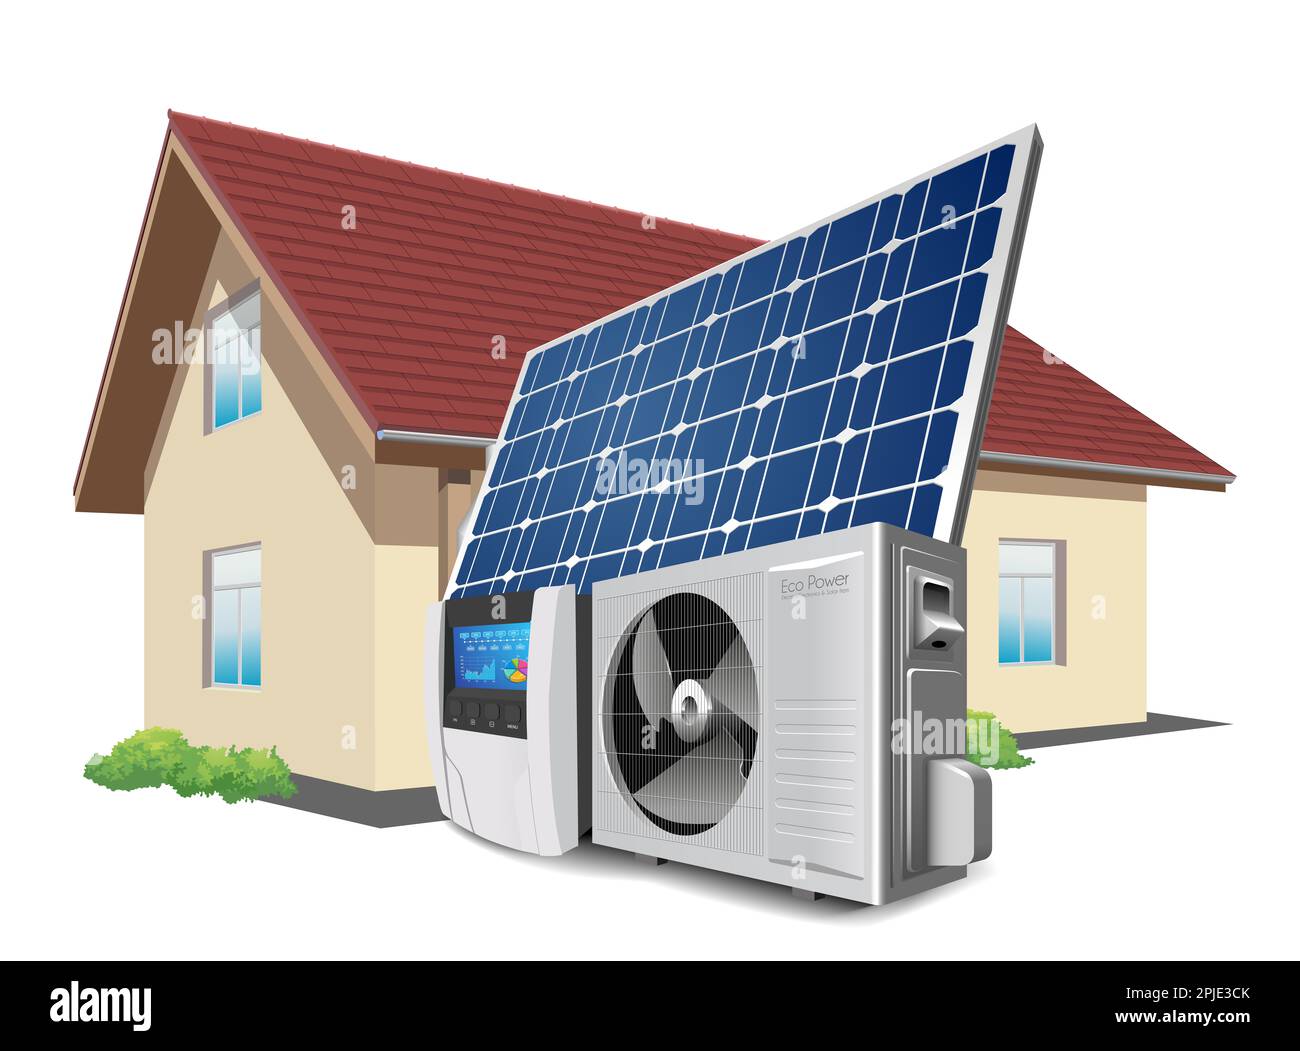 Wärmepumpe, Wechselrichter und Solarmodul als Konzept für ein grünes Energiesystem Stockfoto